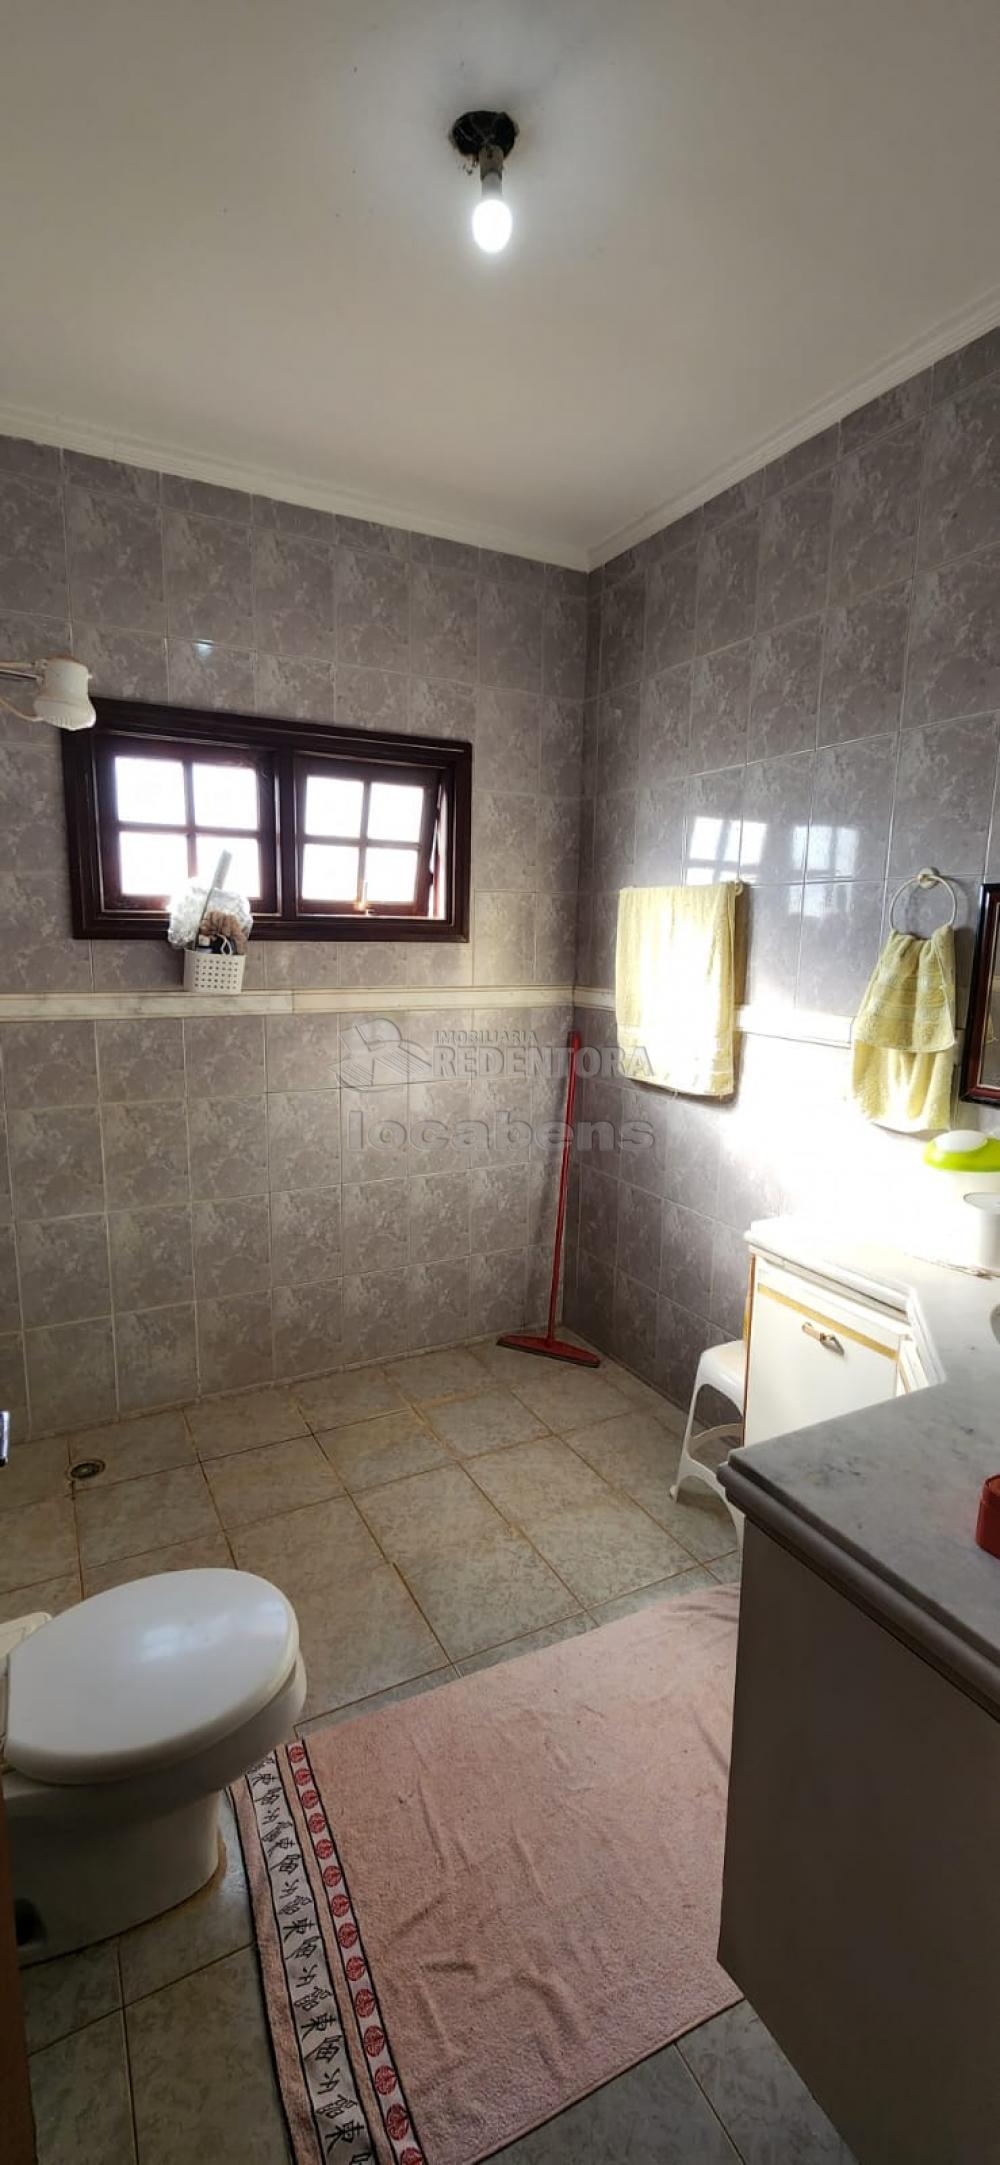 Comprar Casa / Sobrado em São José do Rio Preto apenas R$ 950.000,00 - Foto 20